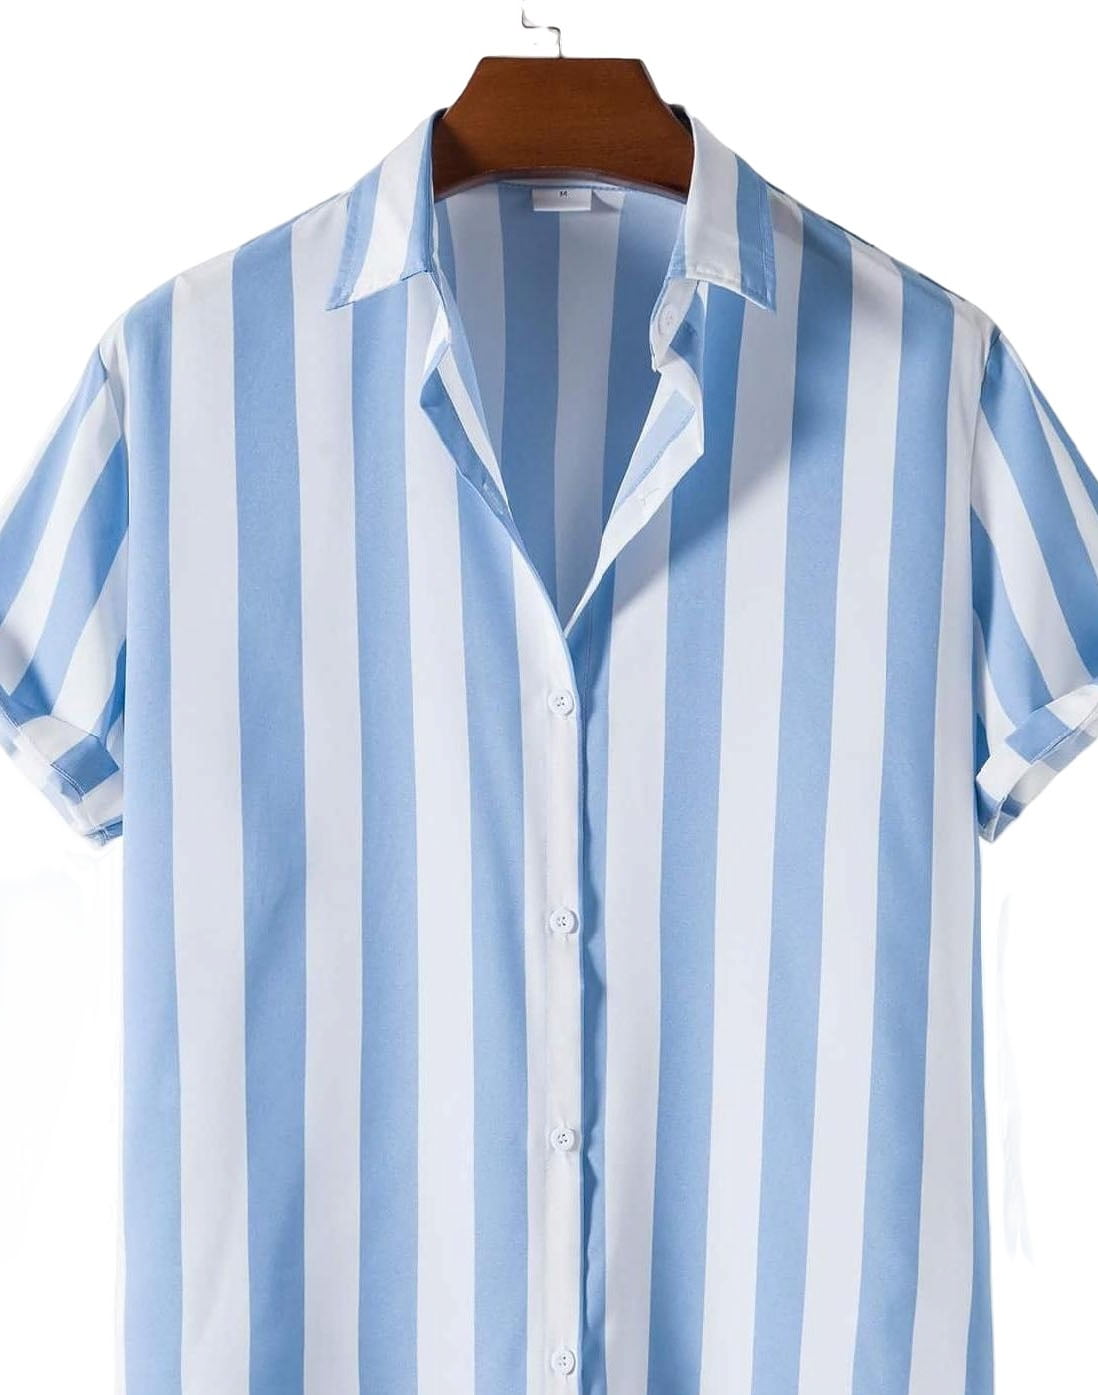 Men's Vertical Striped Shirts Regular Fit Short Sleeve Button Down